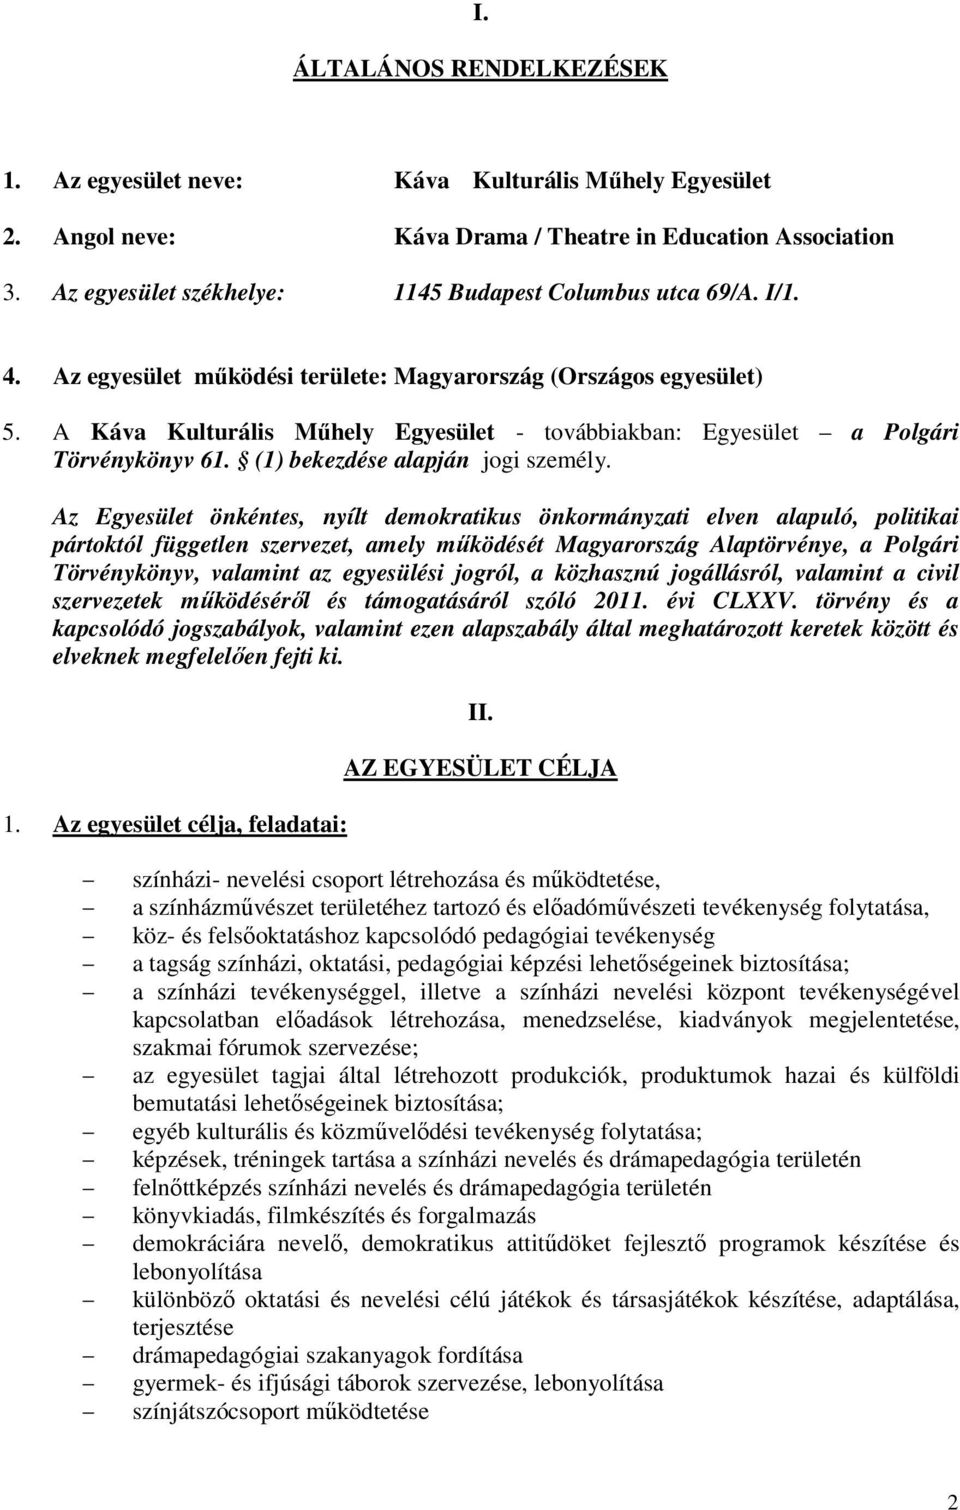 A Káva Kulturális Műhely Egyesület - továbbiakban: Egyesület a Polgári Törvénykönyv 61. (1) bekezdése alapján jogi személy.